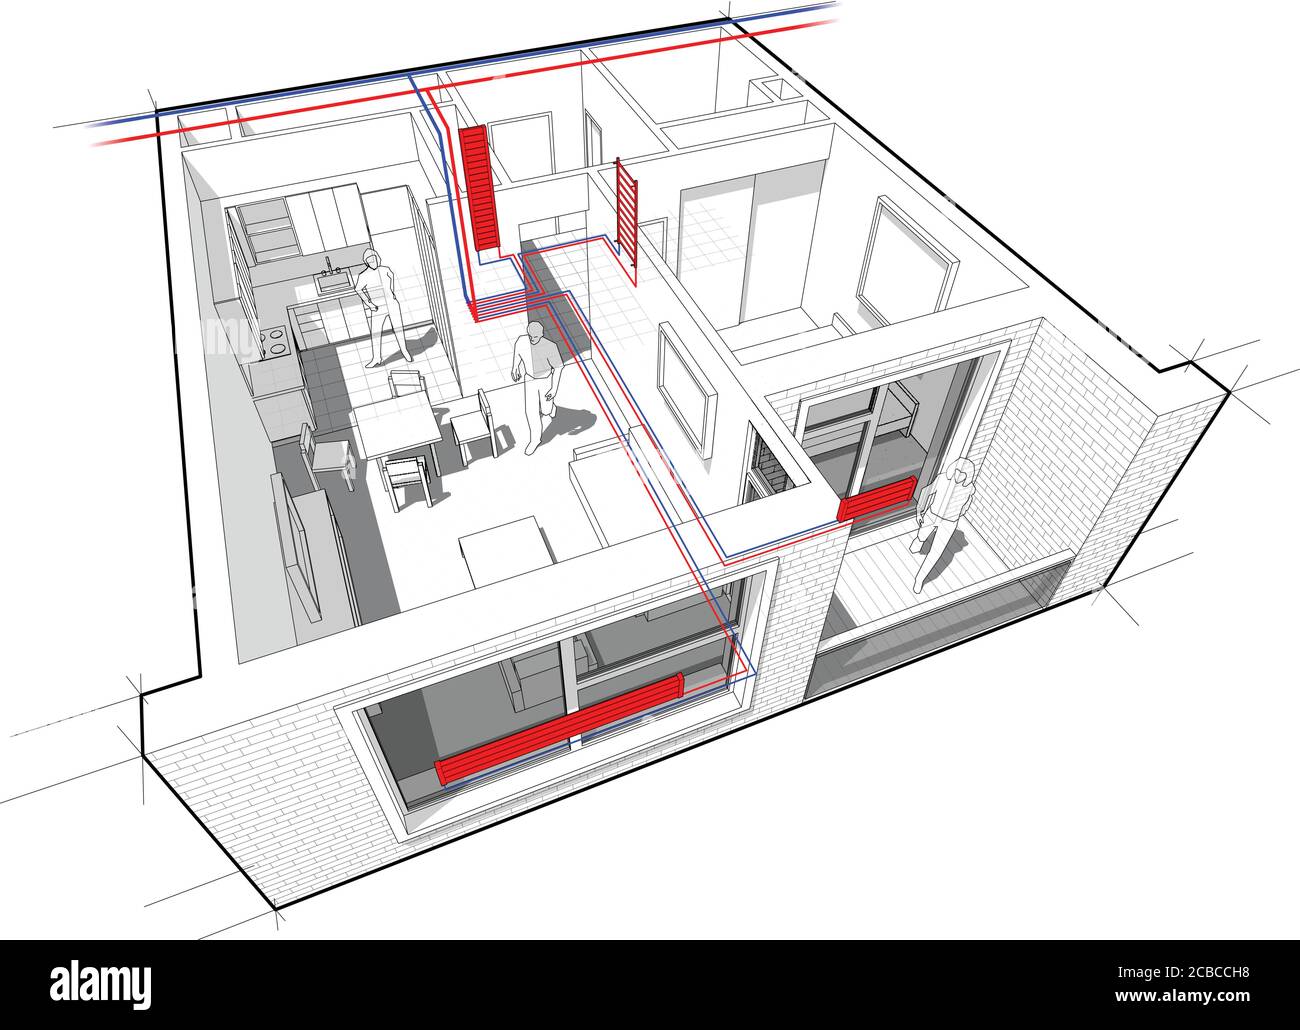 Perspektivische Cutaway-Diagramm einer Wohnung mit einem Schlafzimmer komplett möbliert Mit Warmwasserheizkörper Heizung und Zentralheizung Rohre Stock Vektor